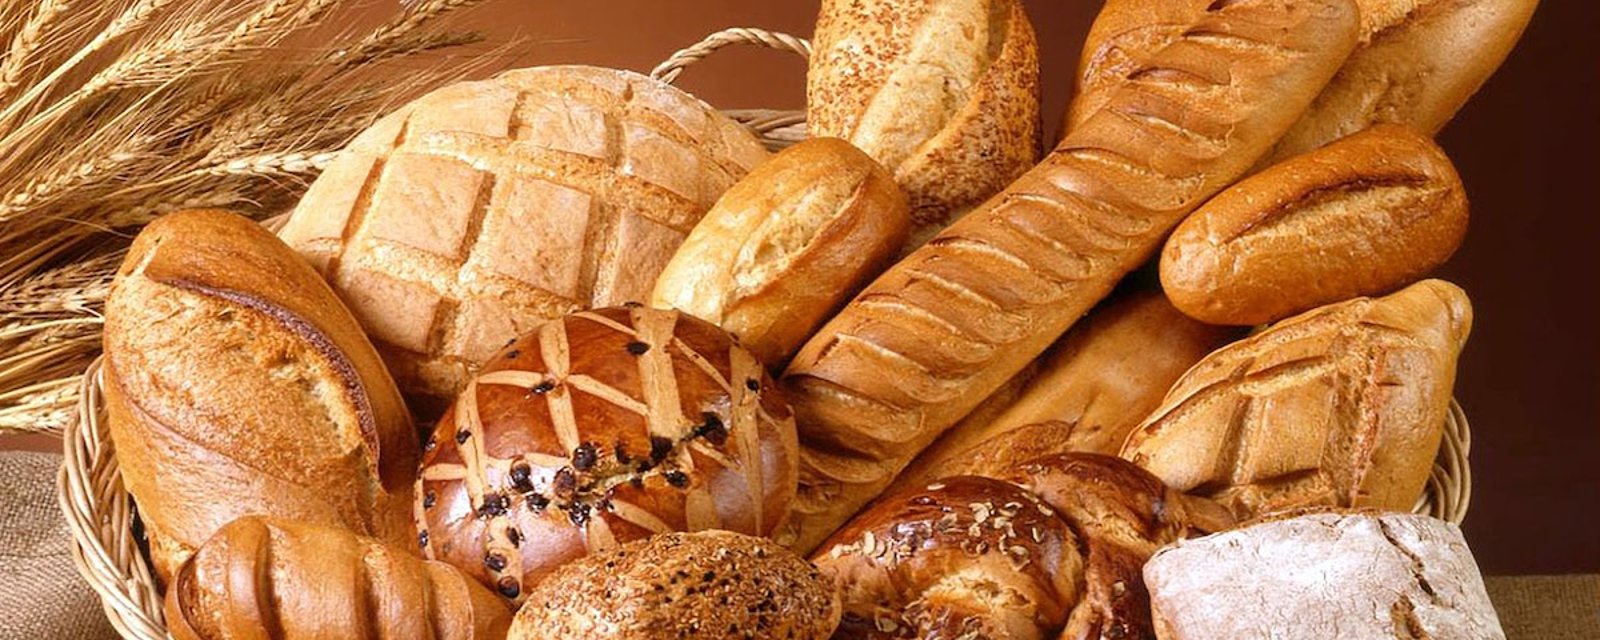 Ce qui peut arriver si vous arrêtez complètement de manger du pain